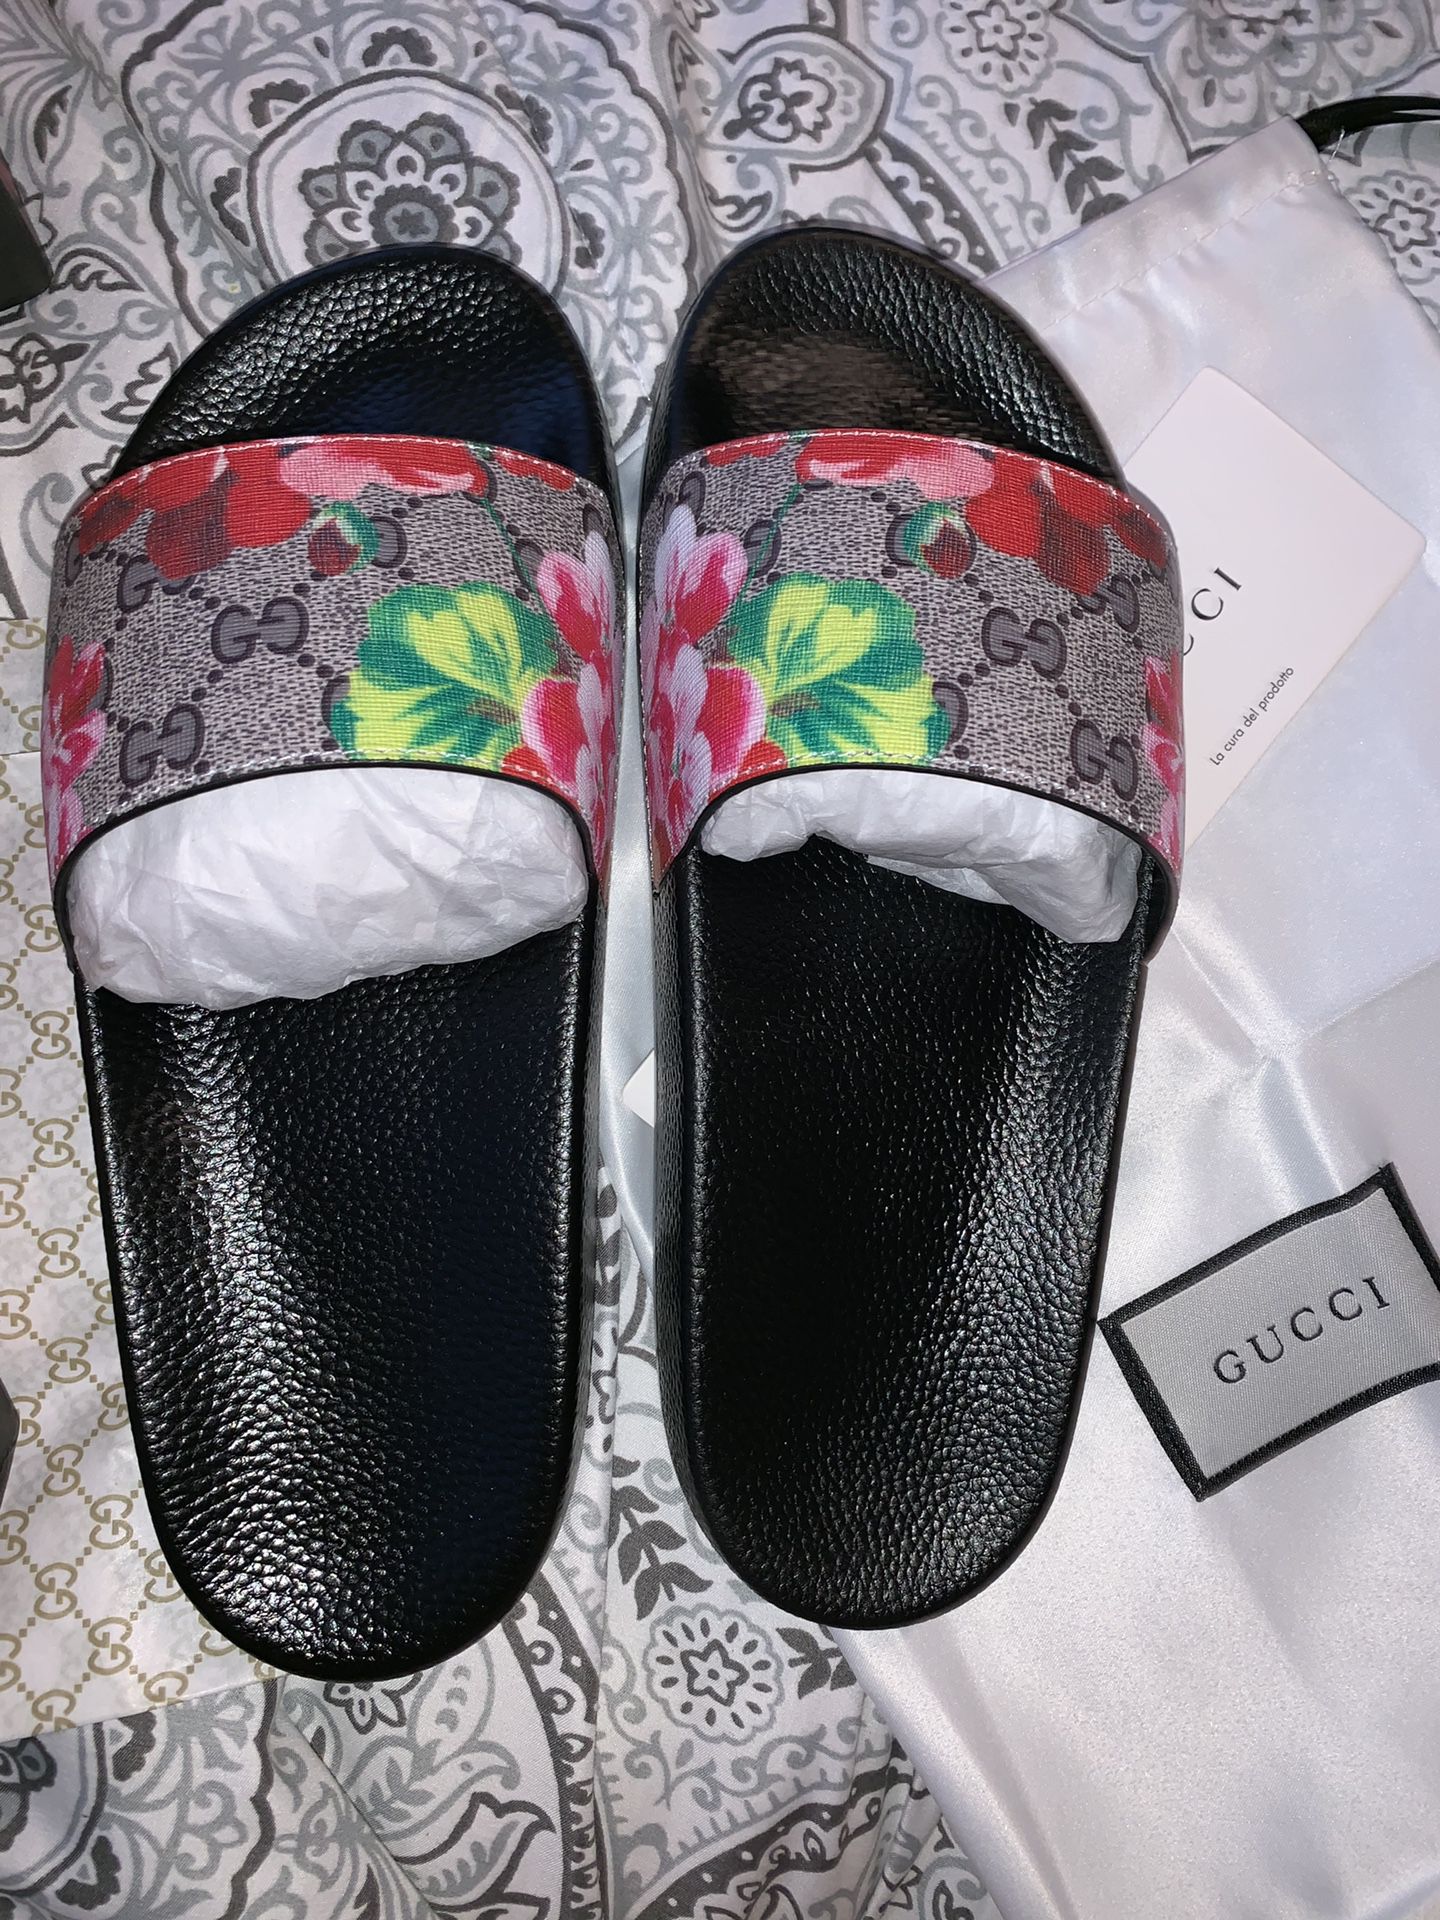 Gucci Blooms Supreme Slides